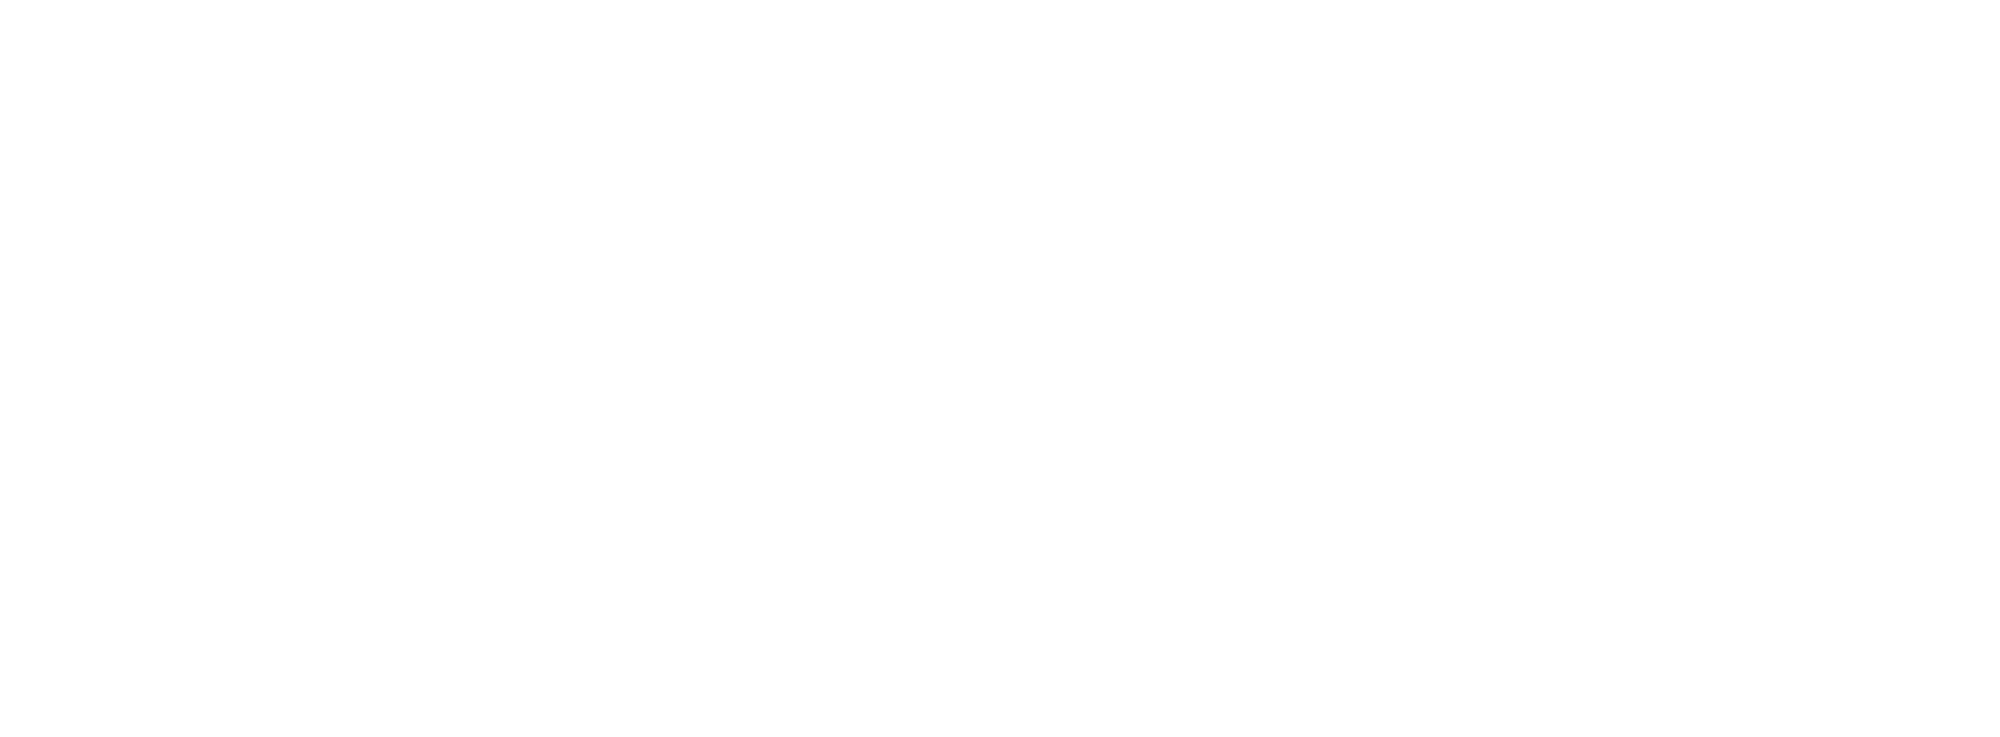 aspect web design logo poppins white